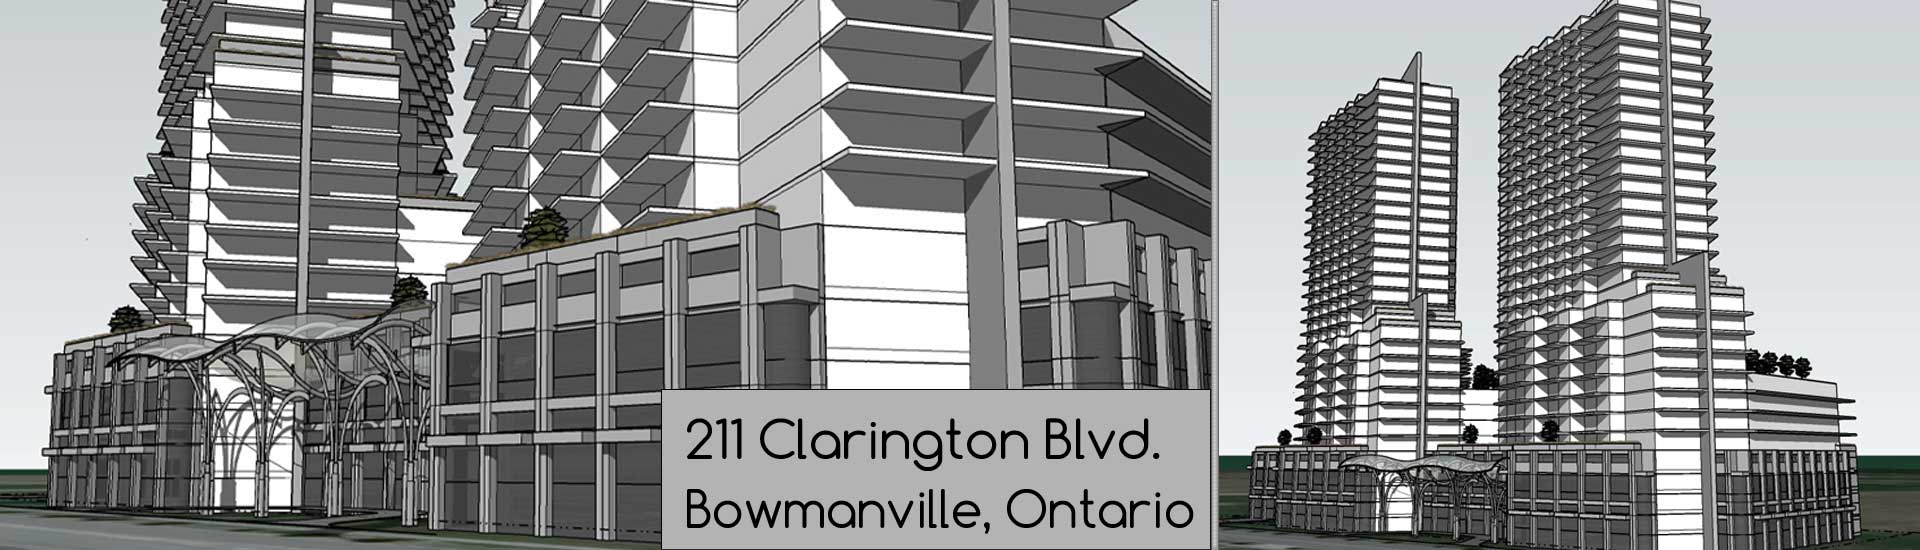 211 Clarington Blvd, Bowmanville, Ontario